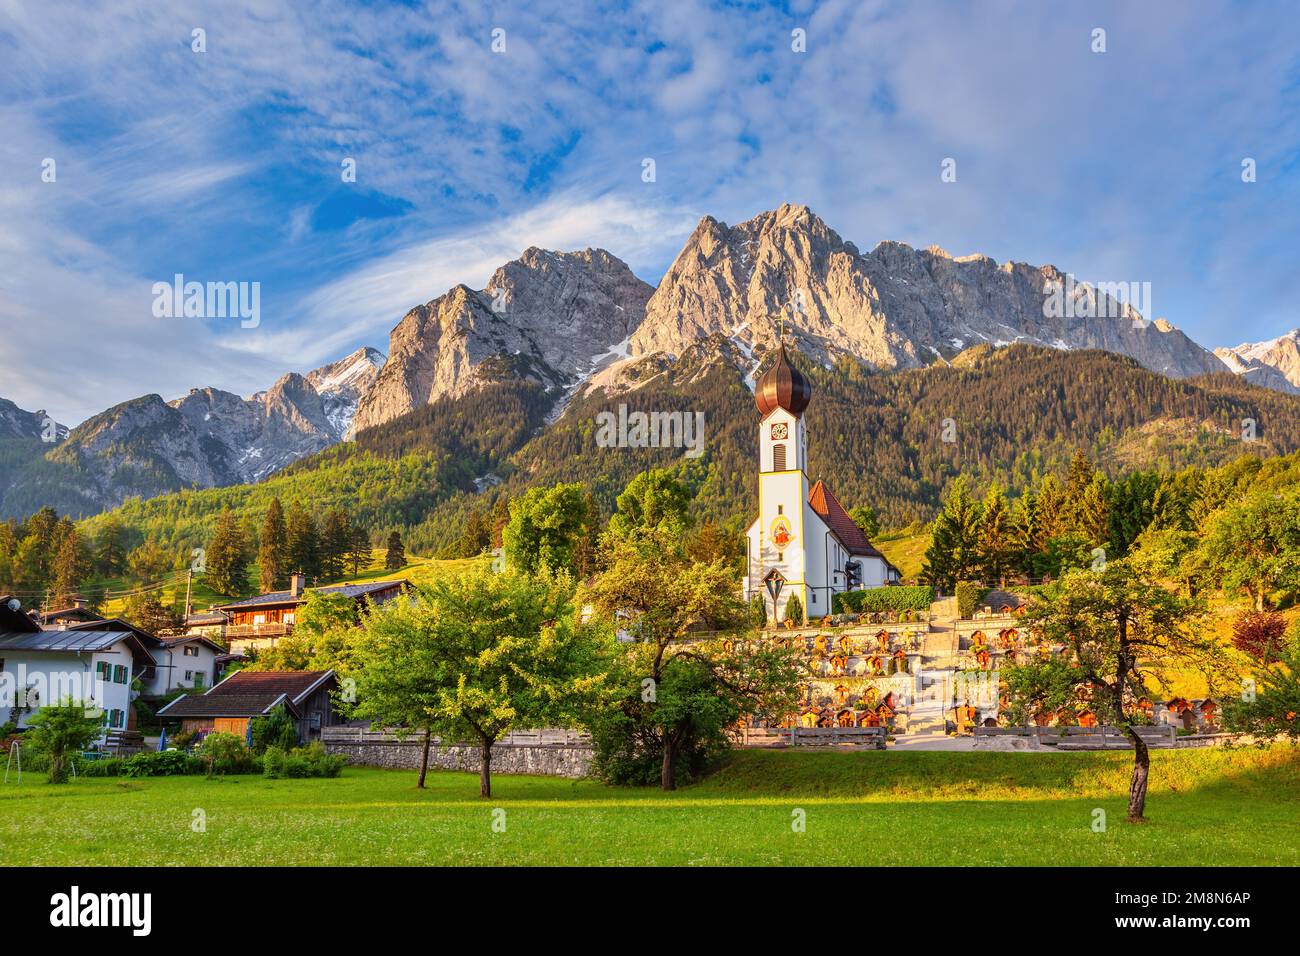 Garmisch Partenkirchen Allemagne, le pic de Zugspitze et la chaîne de montagnes des Alpes avec une petite église dans le village de Grainau Banque D'Images